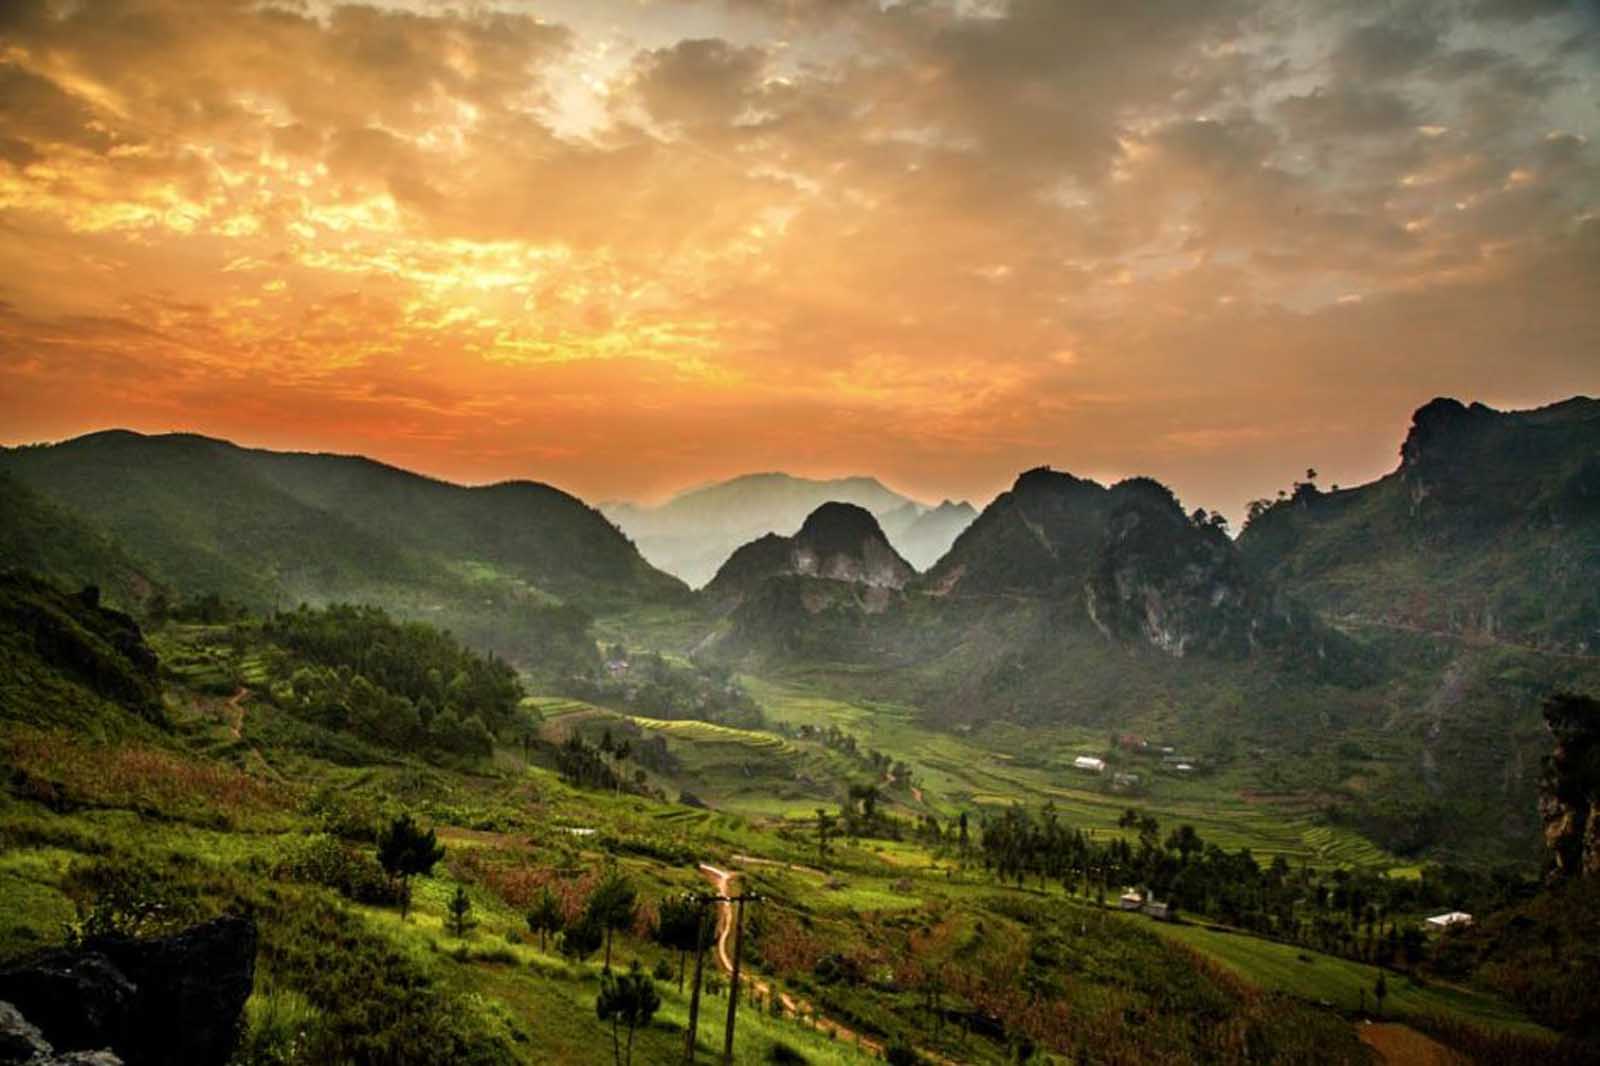 vietnam photos travel